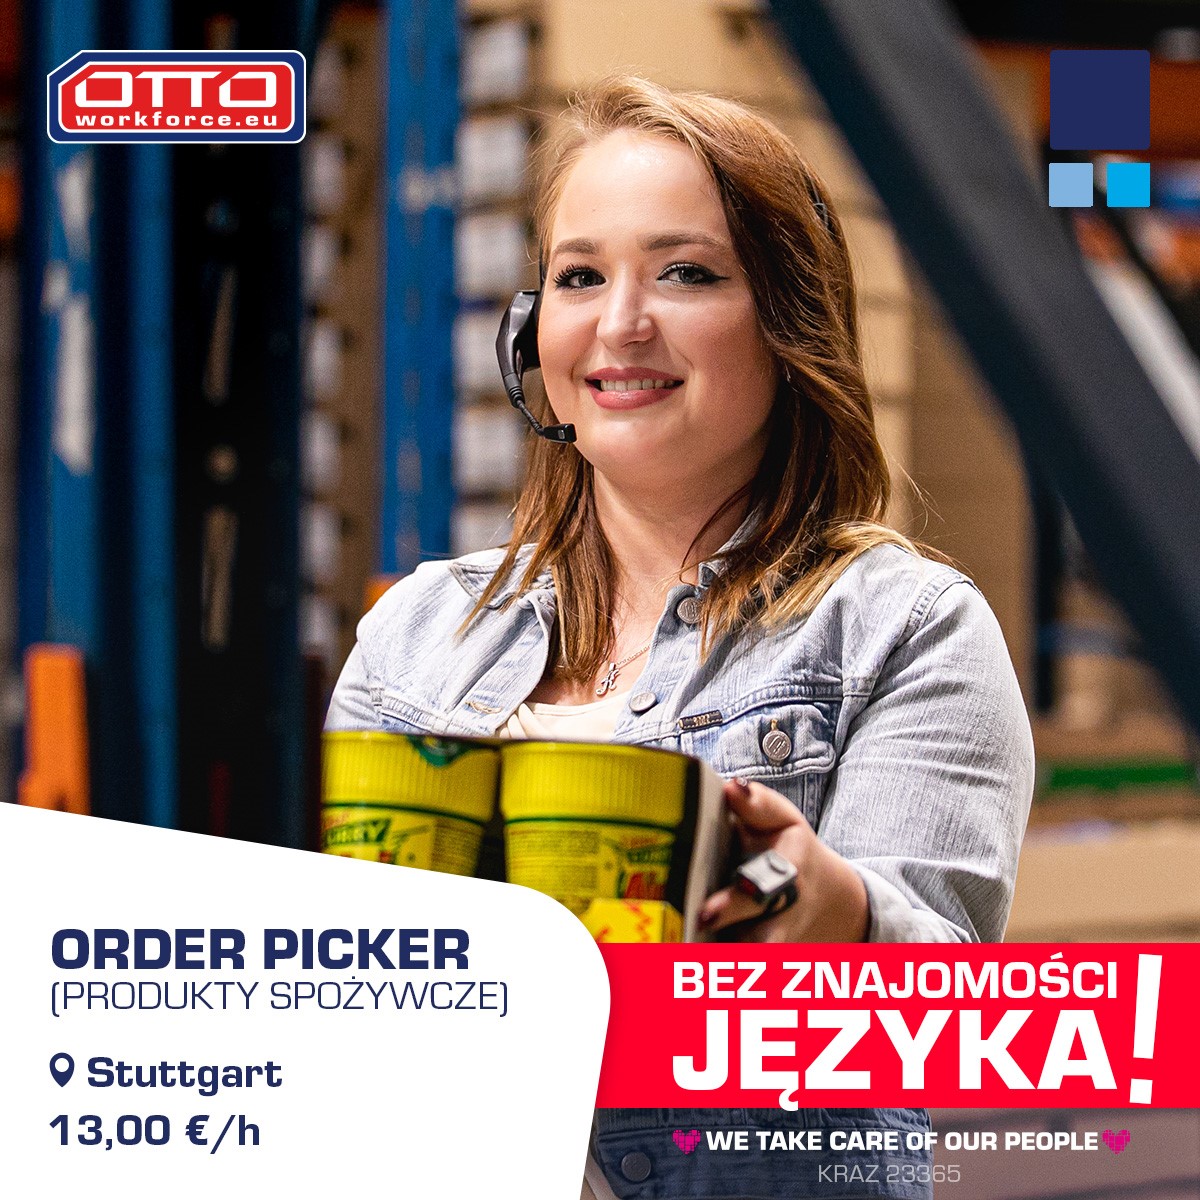 Order picker (produkty spożywcze). 13,00 €/h